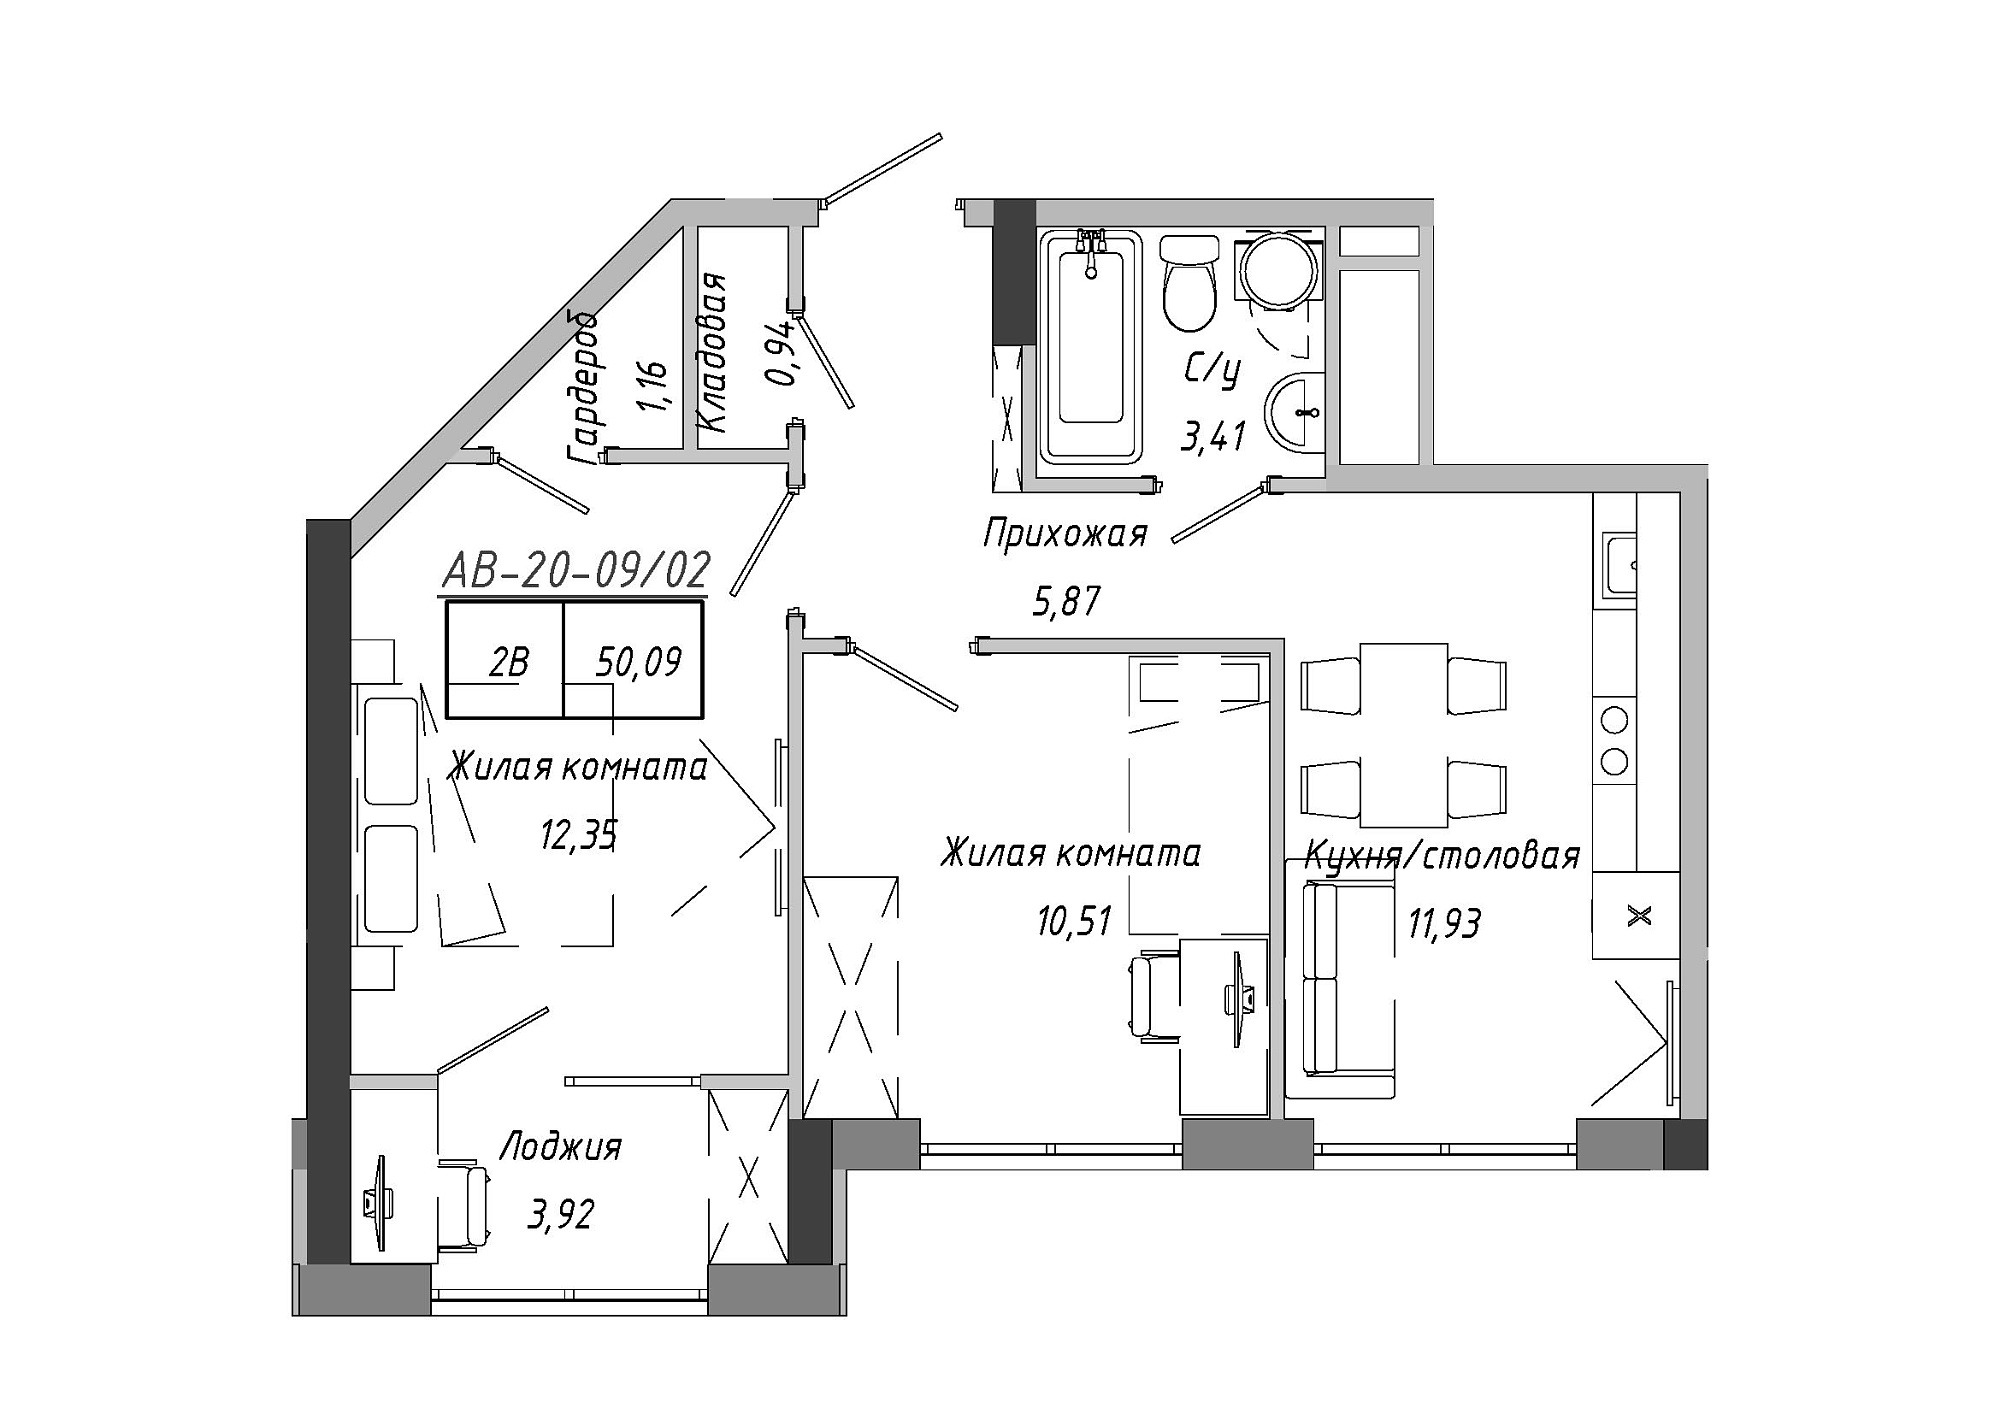 Планування 2-к квартира площею 50.33м2, AB-20-09/00002.